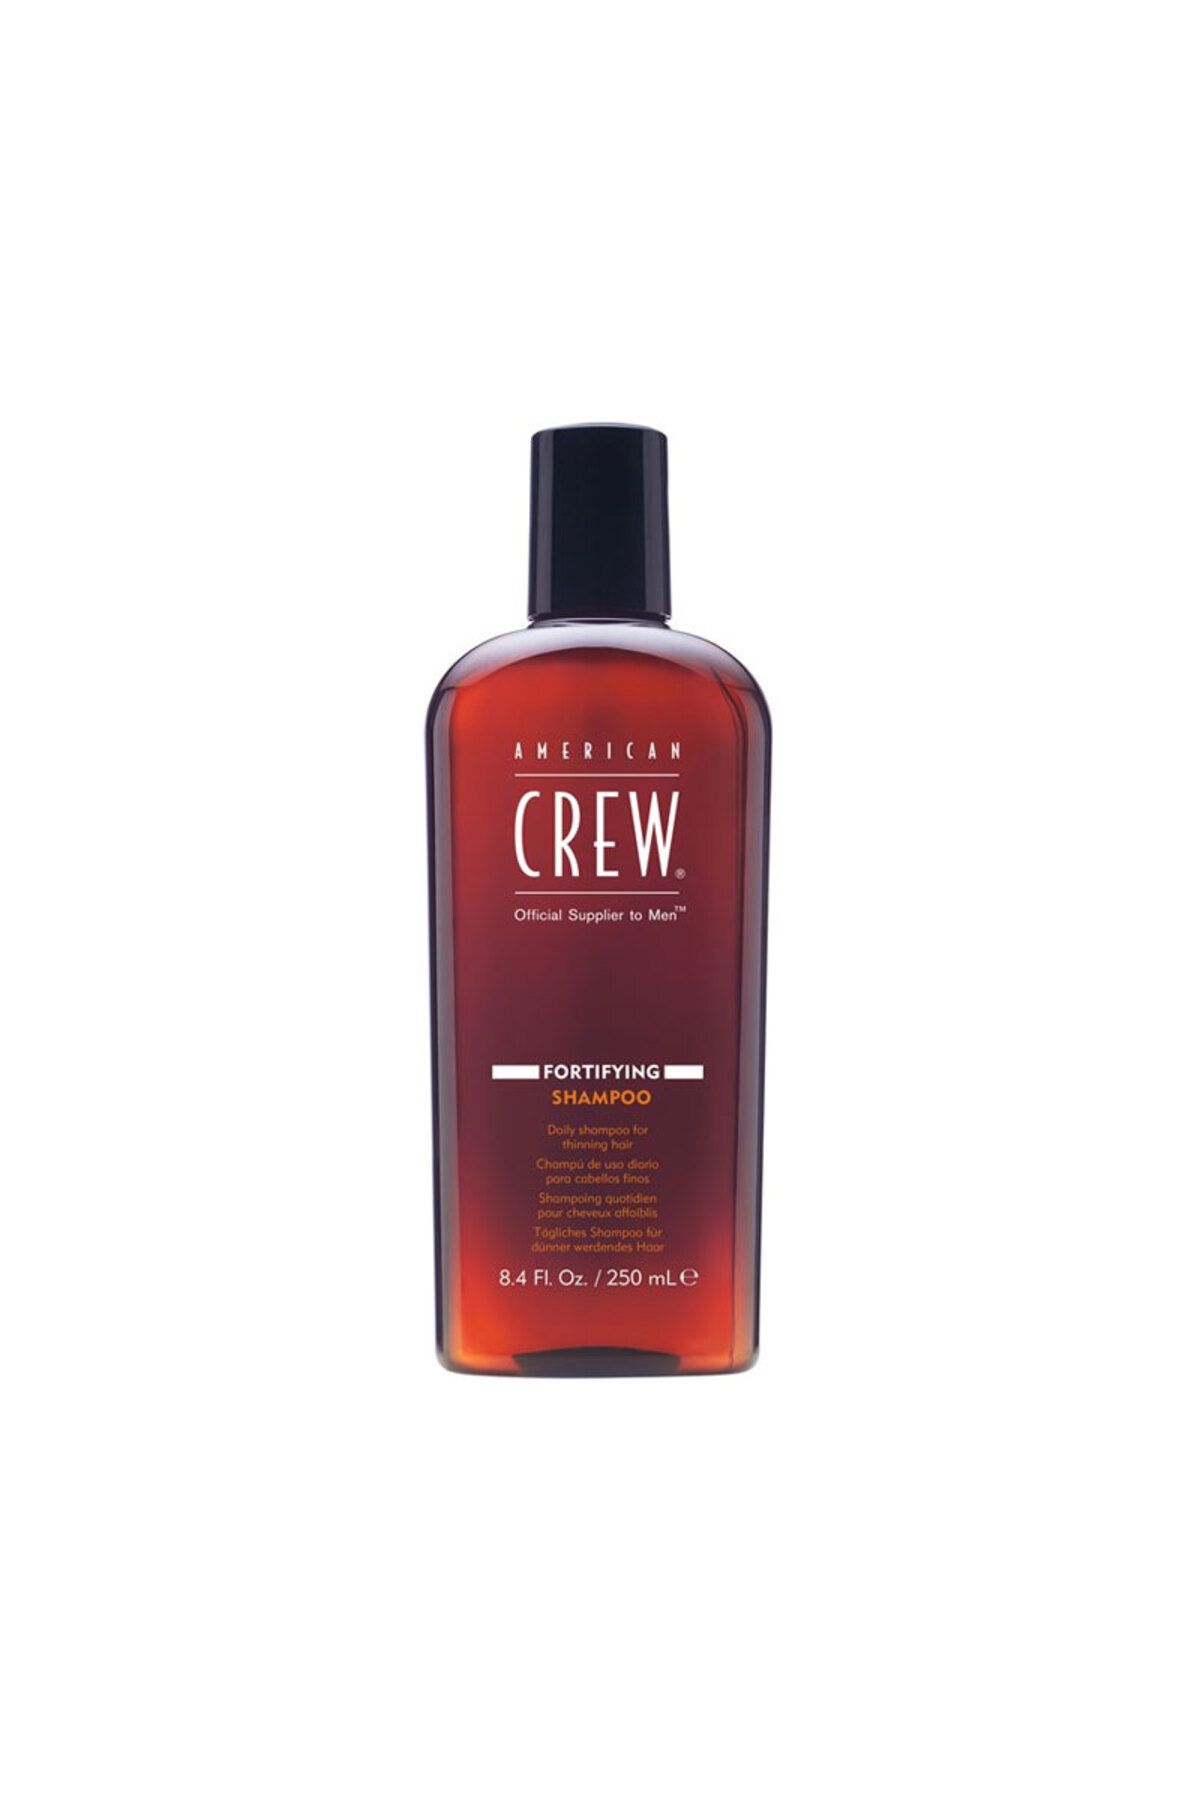 American Crew Erkeklere Özel Seyrelen Zayıf Saçlar İçin Güçlendirici Şampuan 250ml